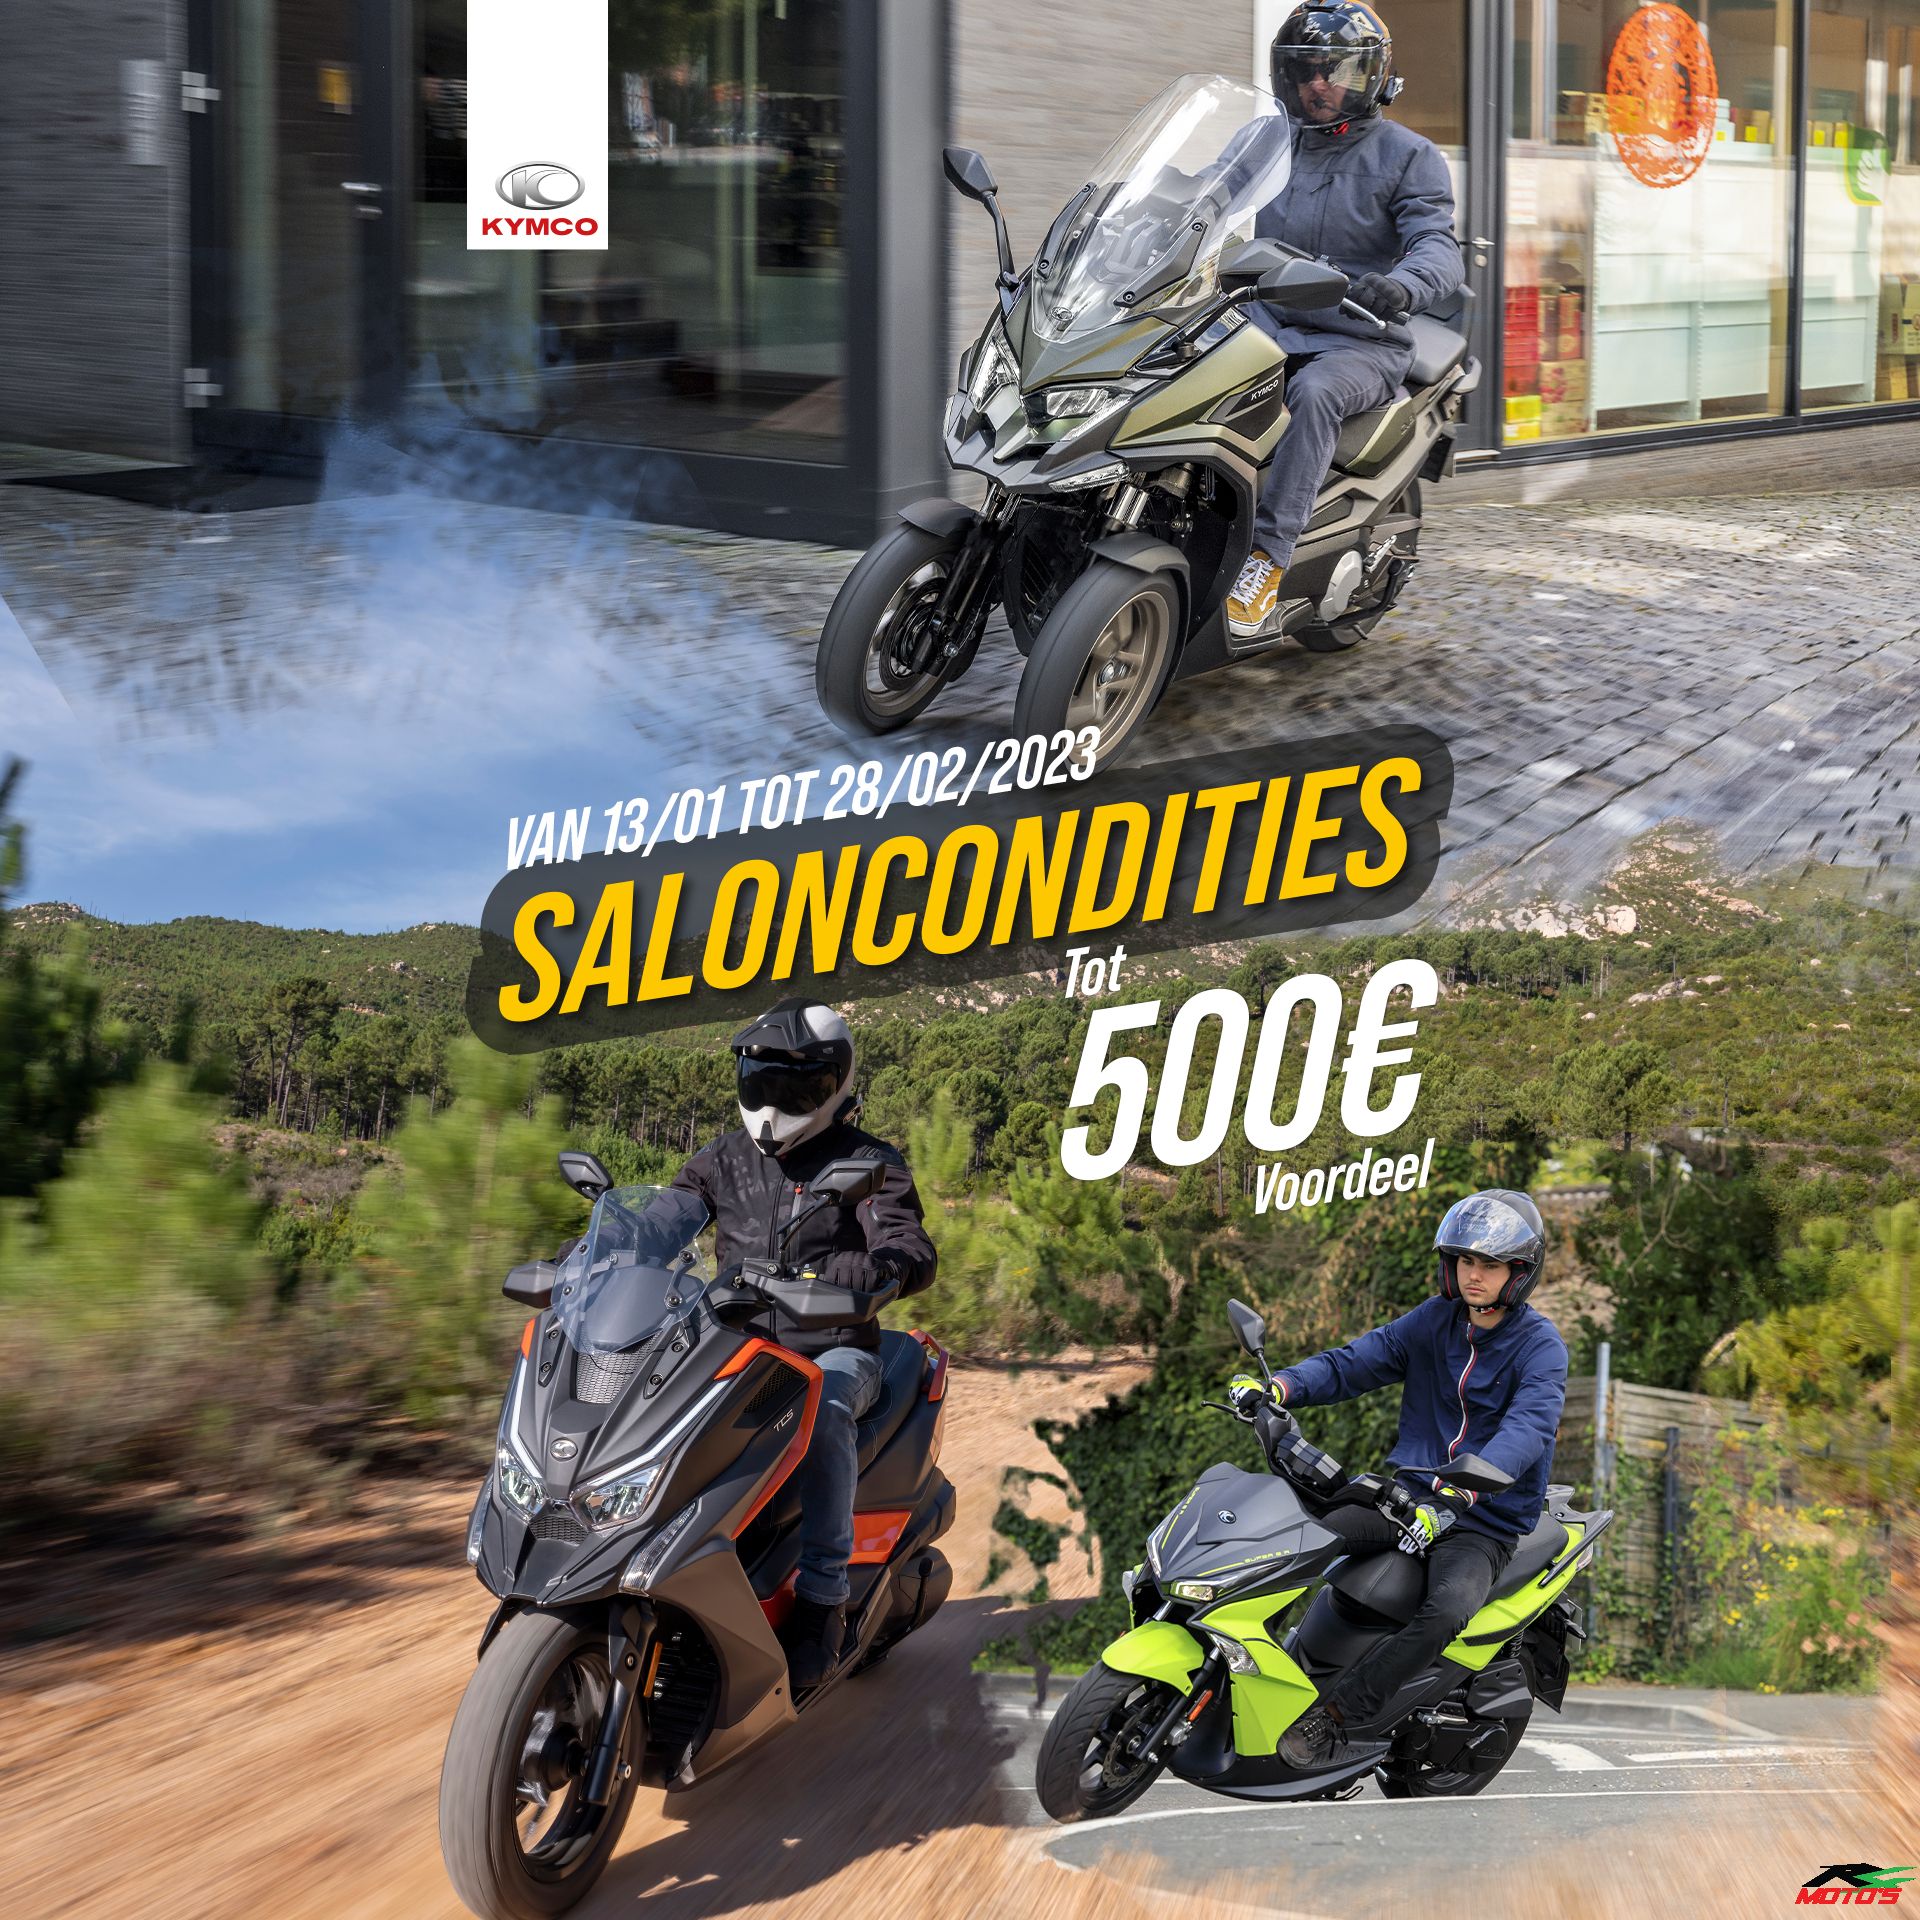 Kymco Saloncondities - R4 Moto's